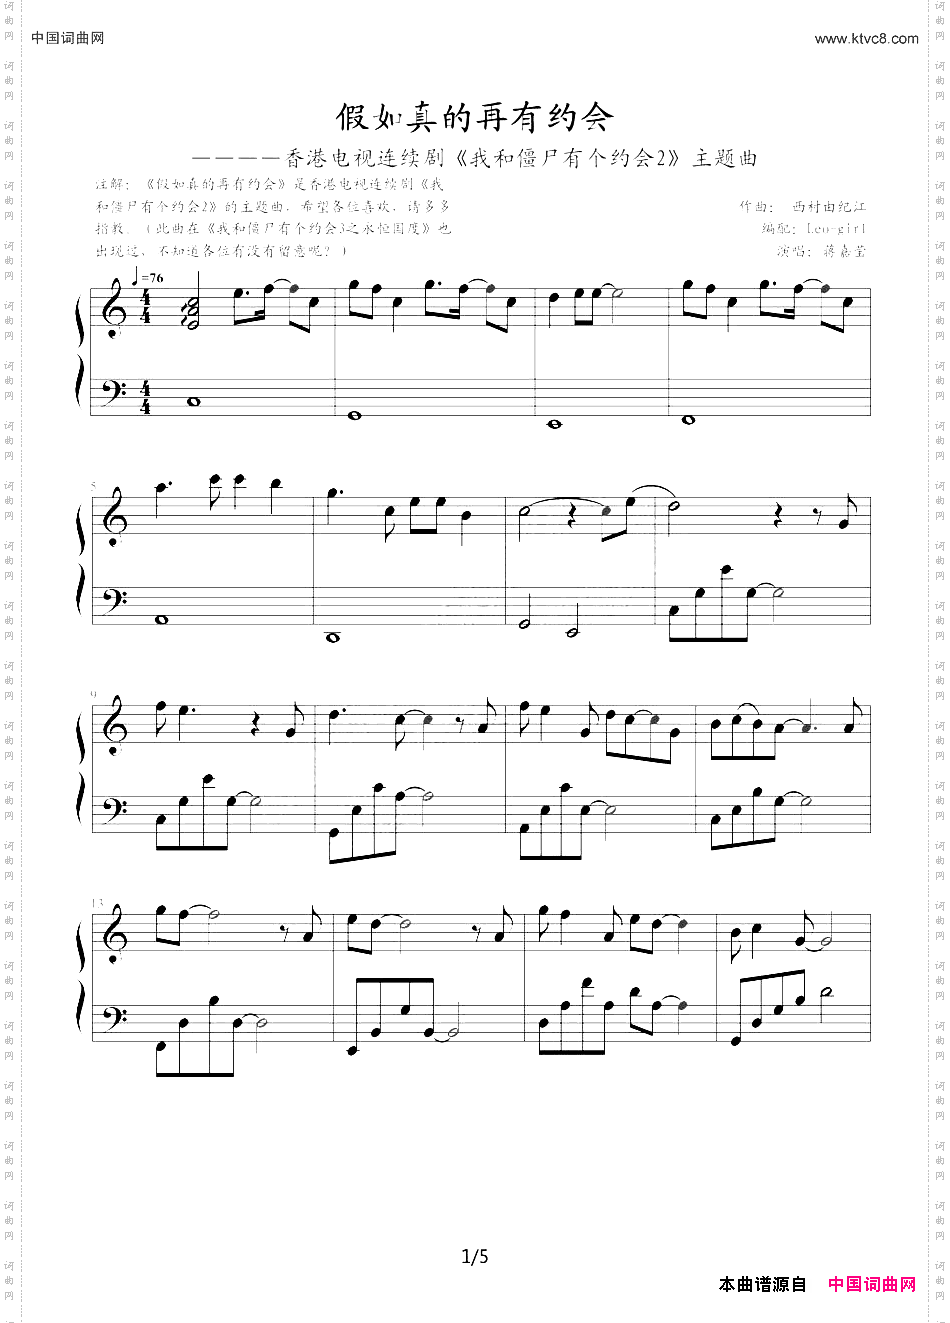 《我和僵尸有个约会2》主题曲》原创钢琴曲谱 钢琴曲谱 器乐谱